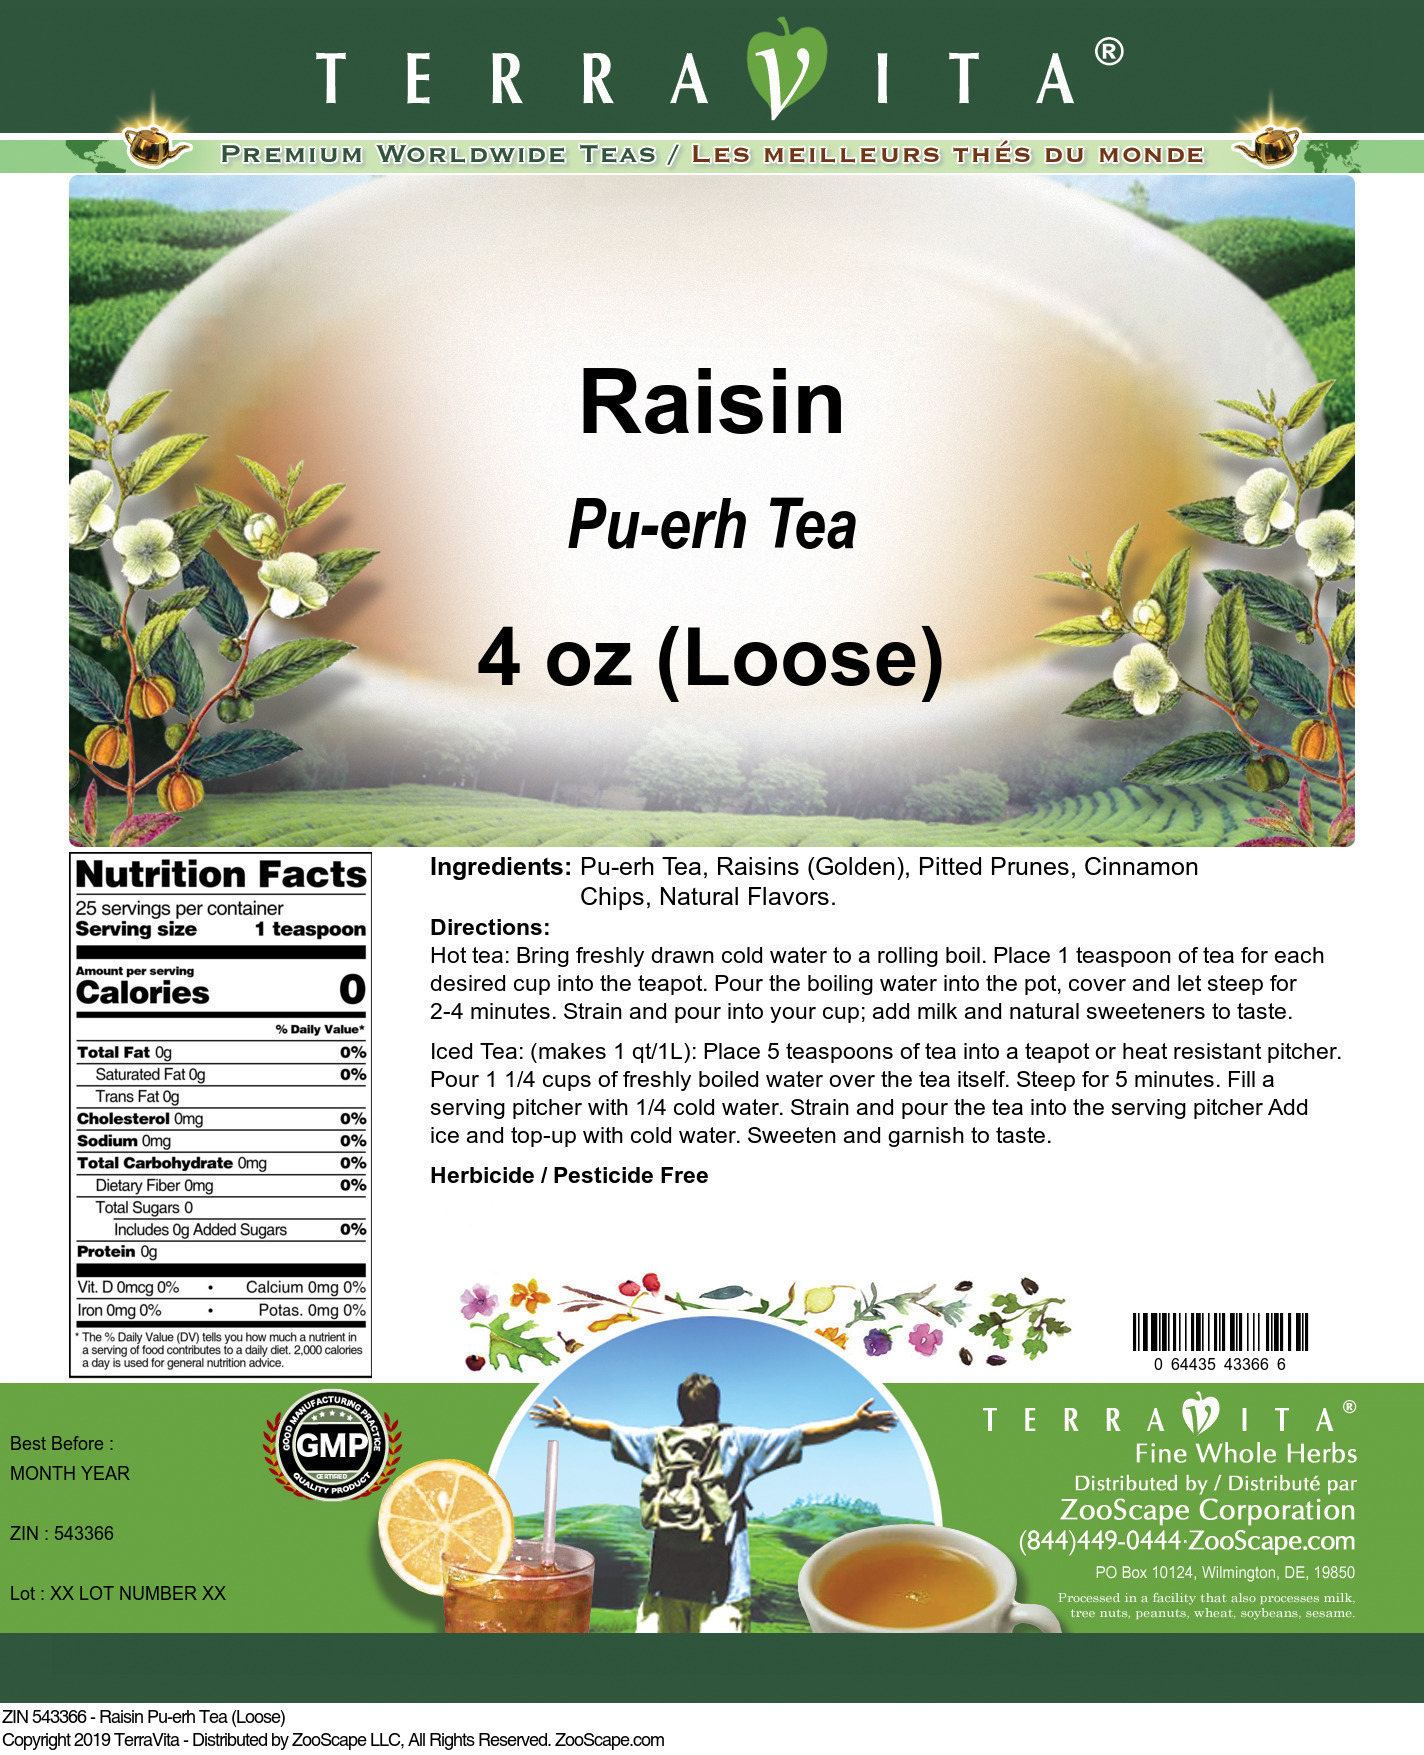 Raisin Pu-erh Tea (Loose) - Label